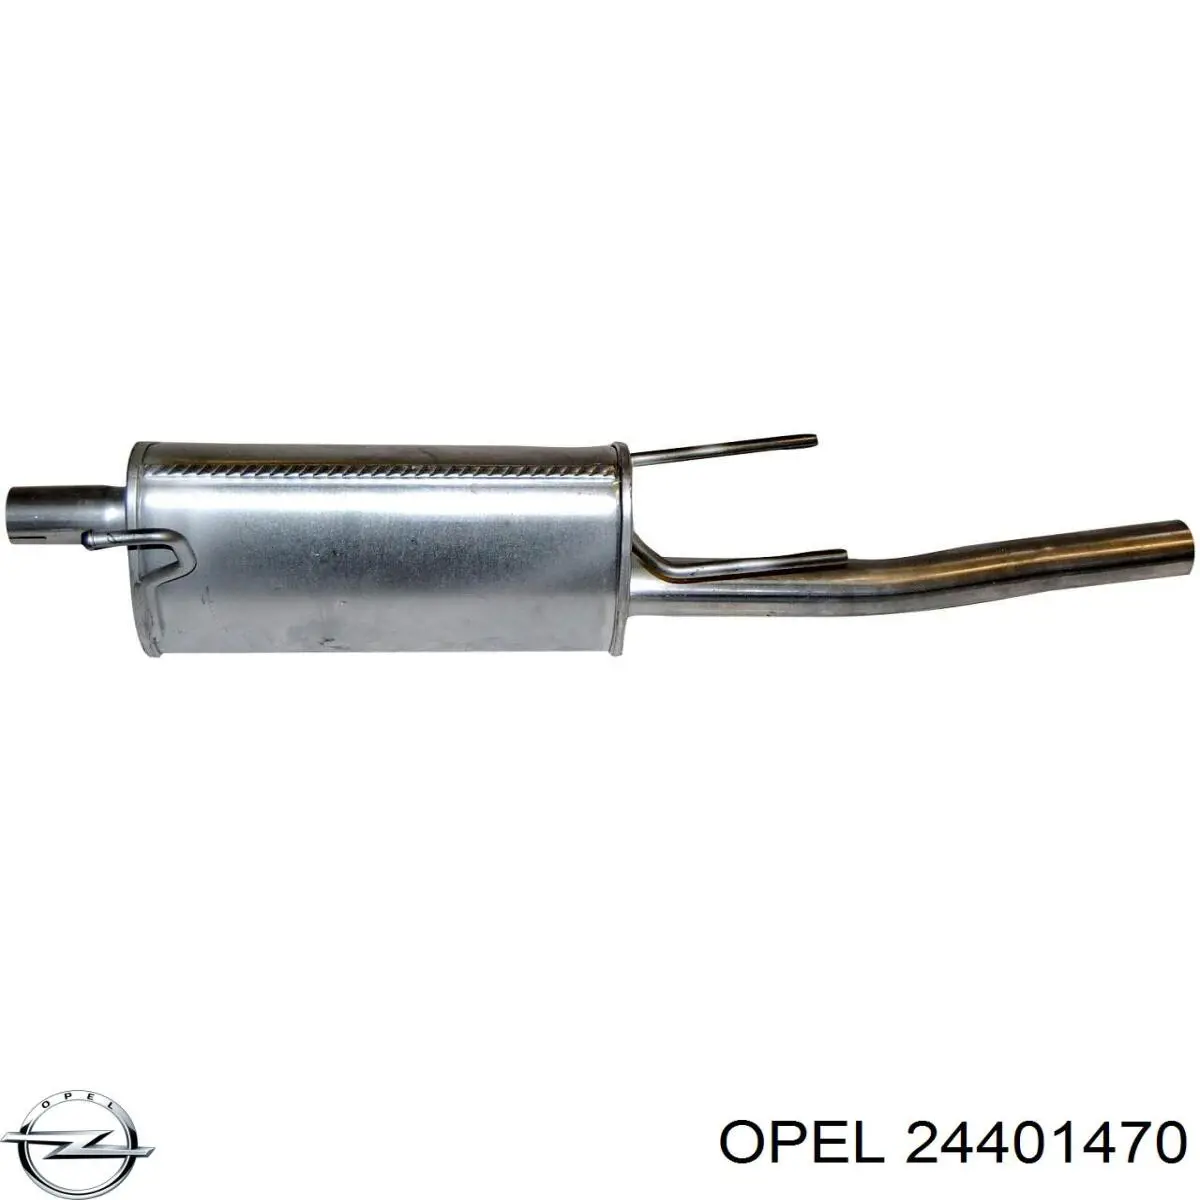 24401470 Opel silenciador posterior